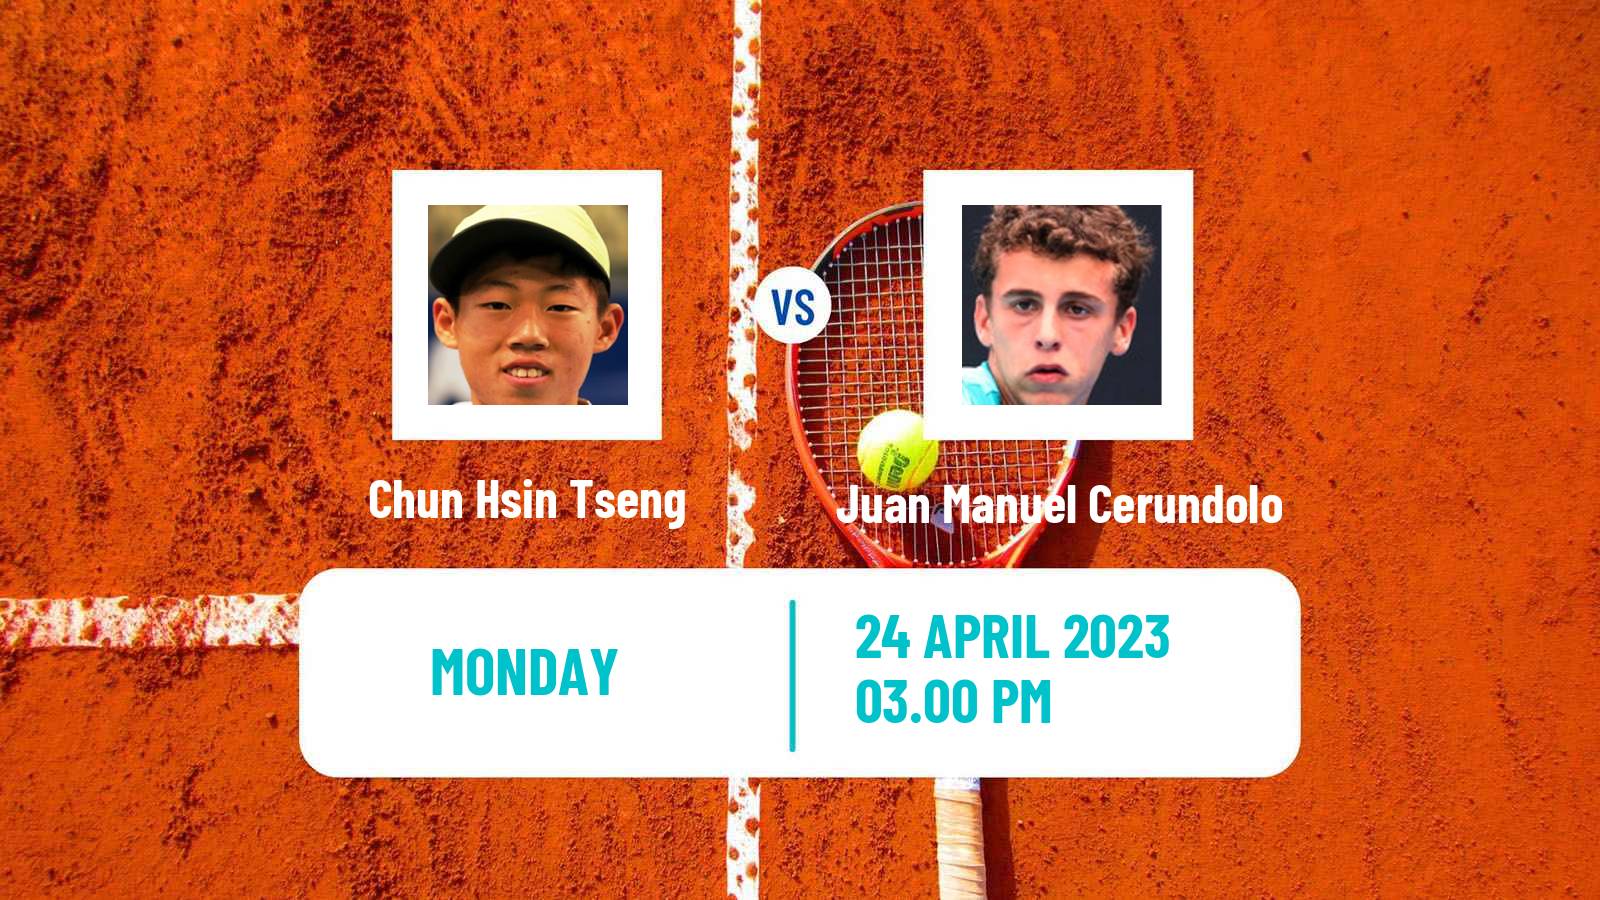 Tennis ATP Madrid Chun Hsin Tseng - Juan Manuel Cerundolo